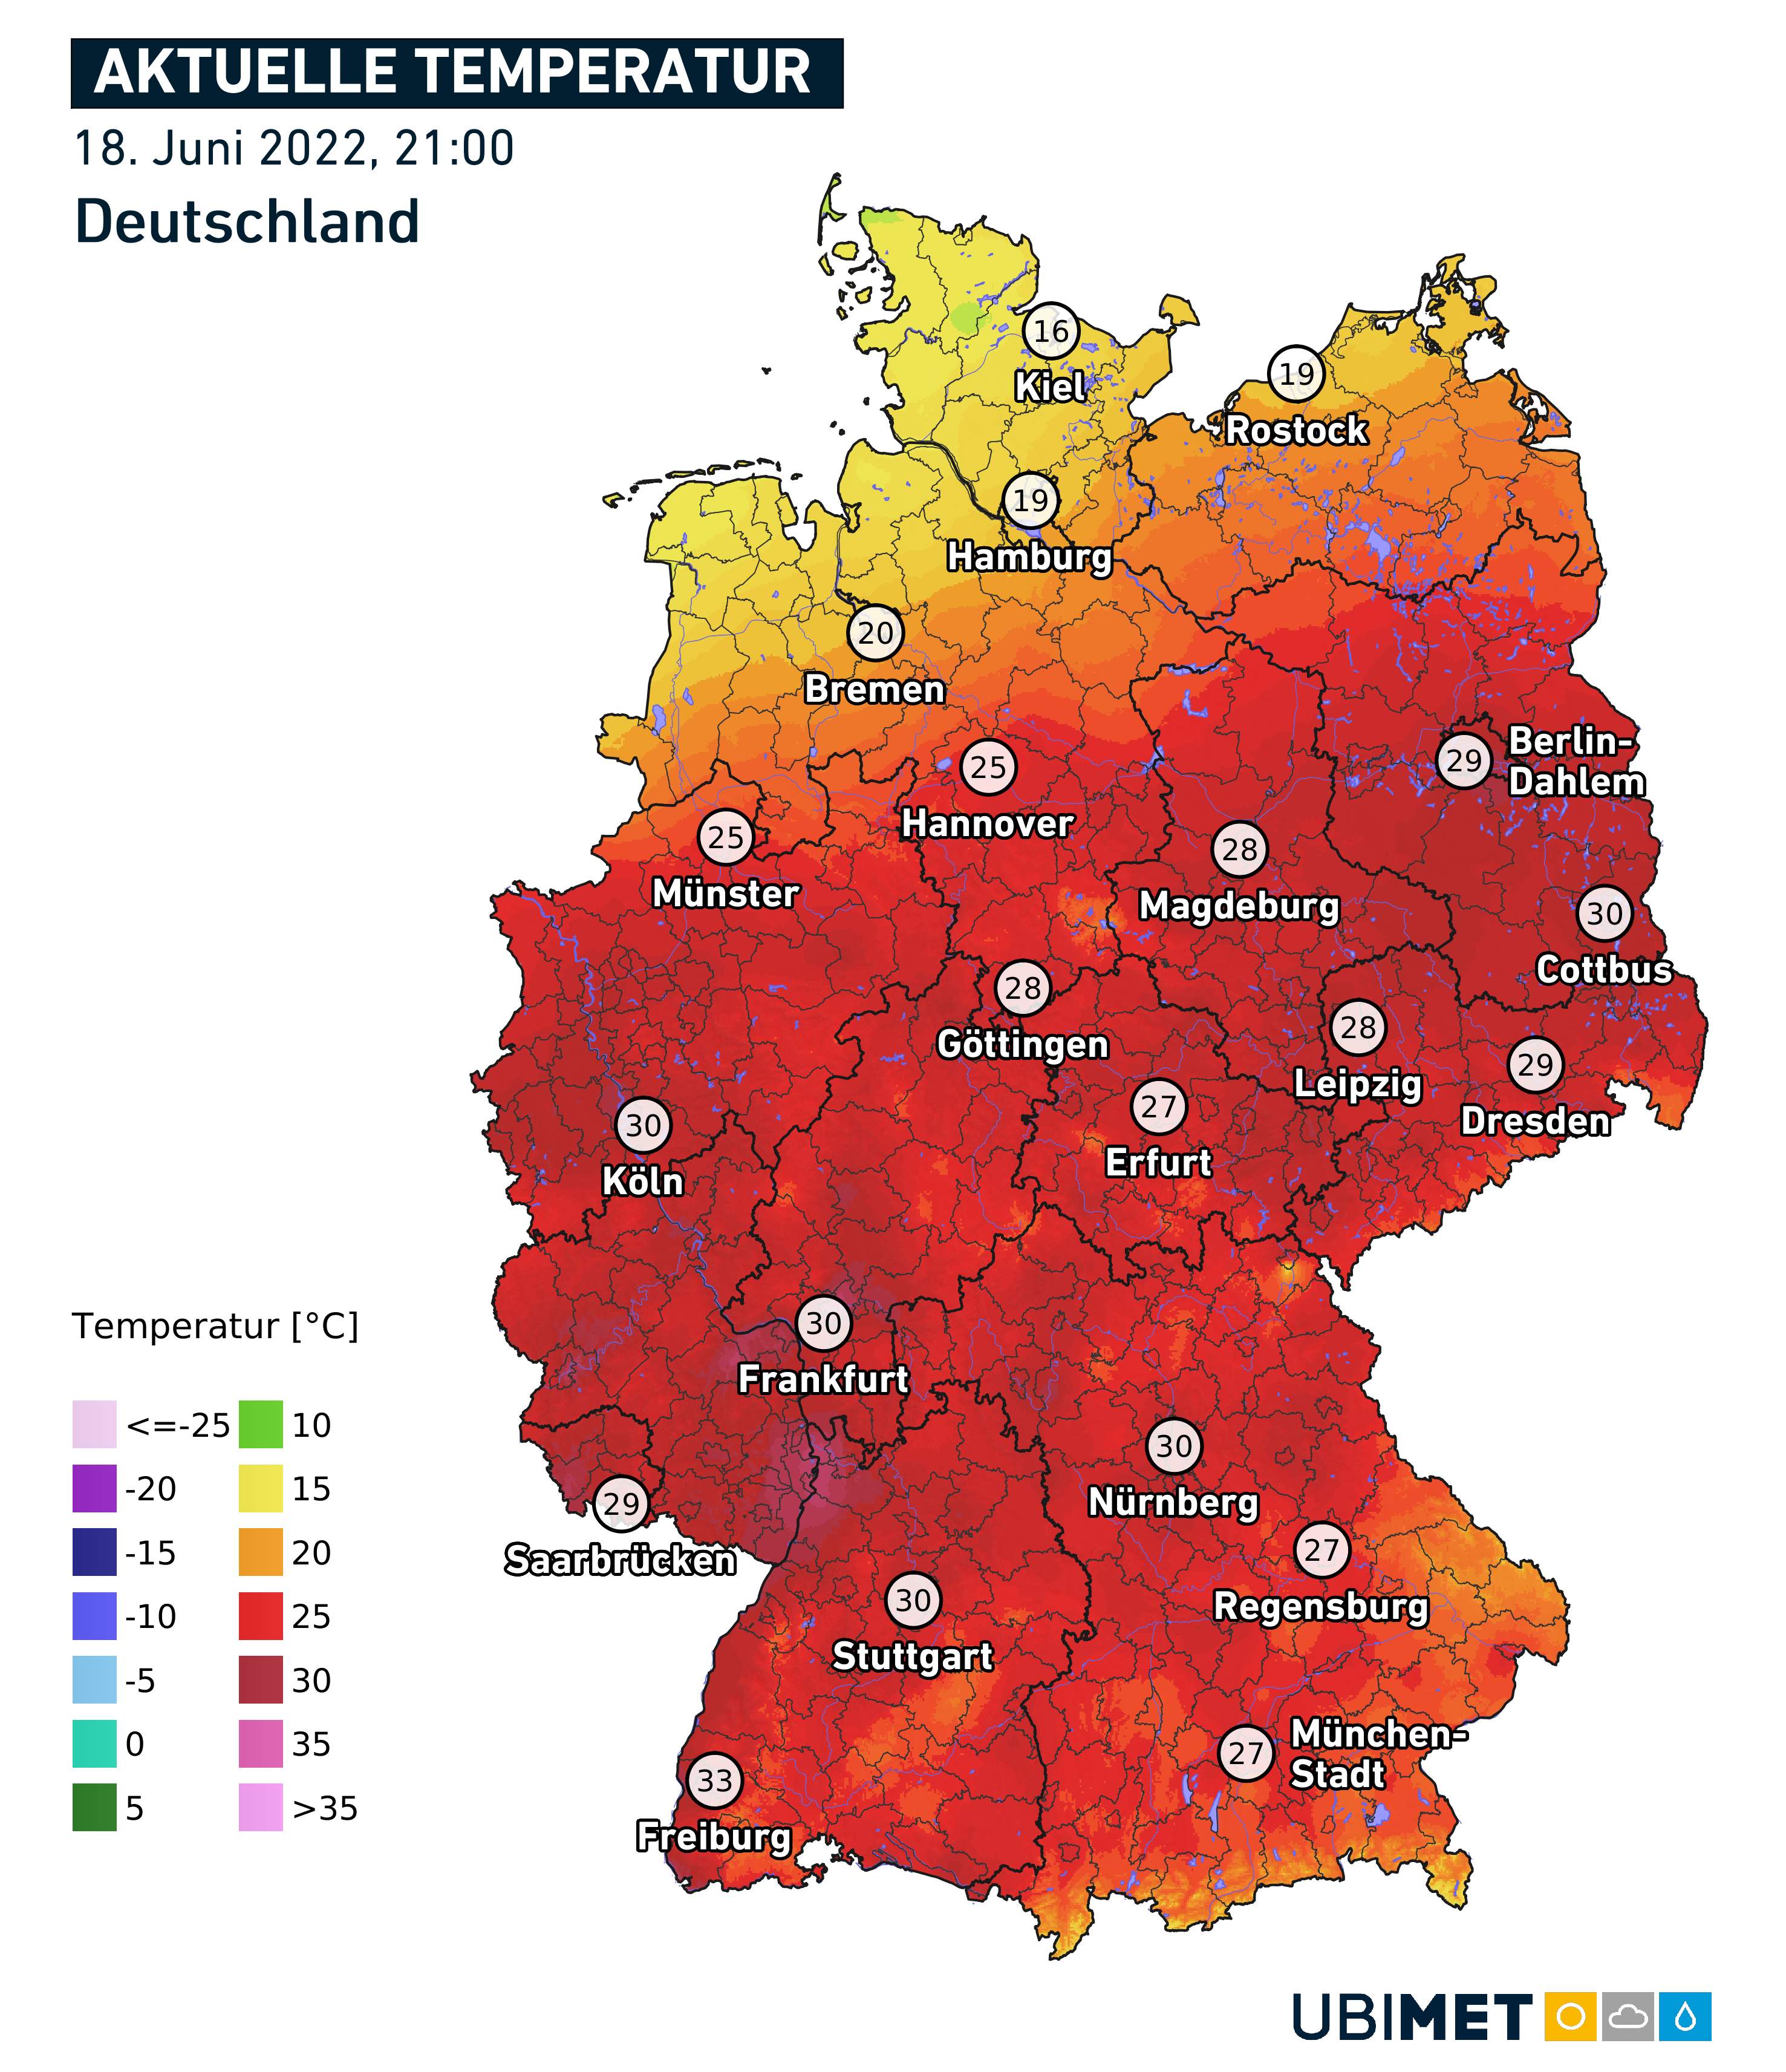 Abb. 3: Aktuelle Temperaturen in Deutschland von 21:00 Uhr